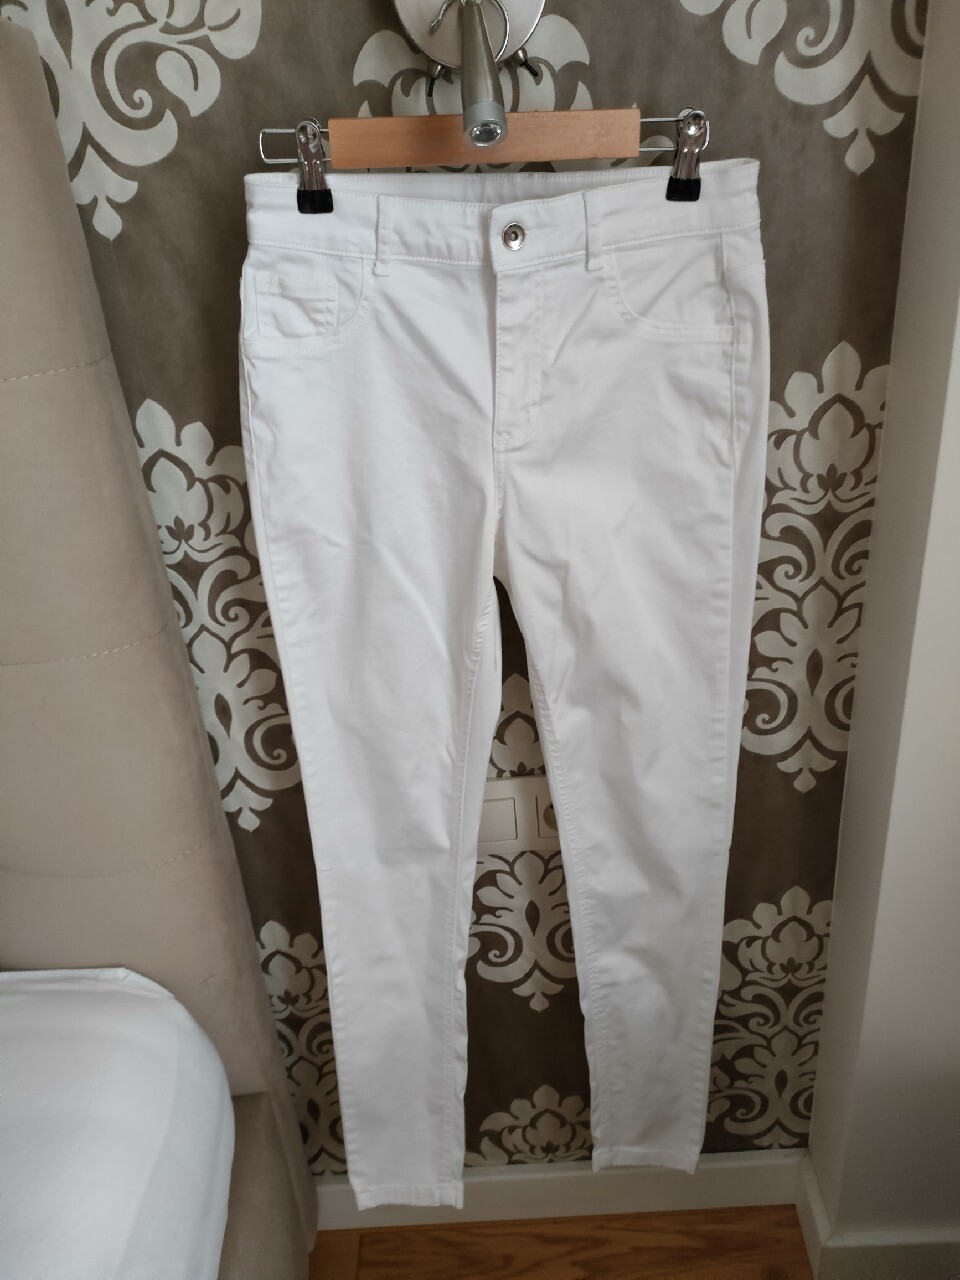 Białe bawełniane spodnie/ legginsy Calzedonia M, Nowy Dwór Mazowiecki